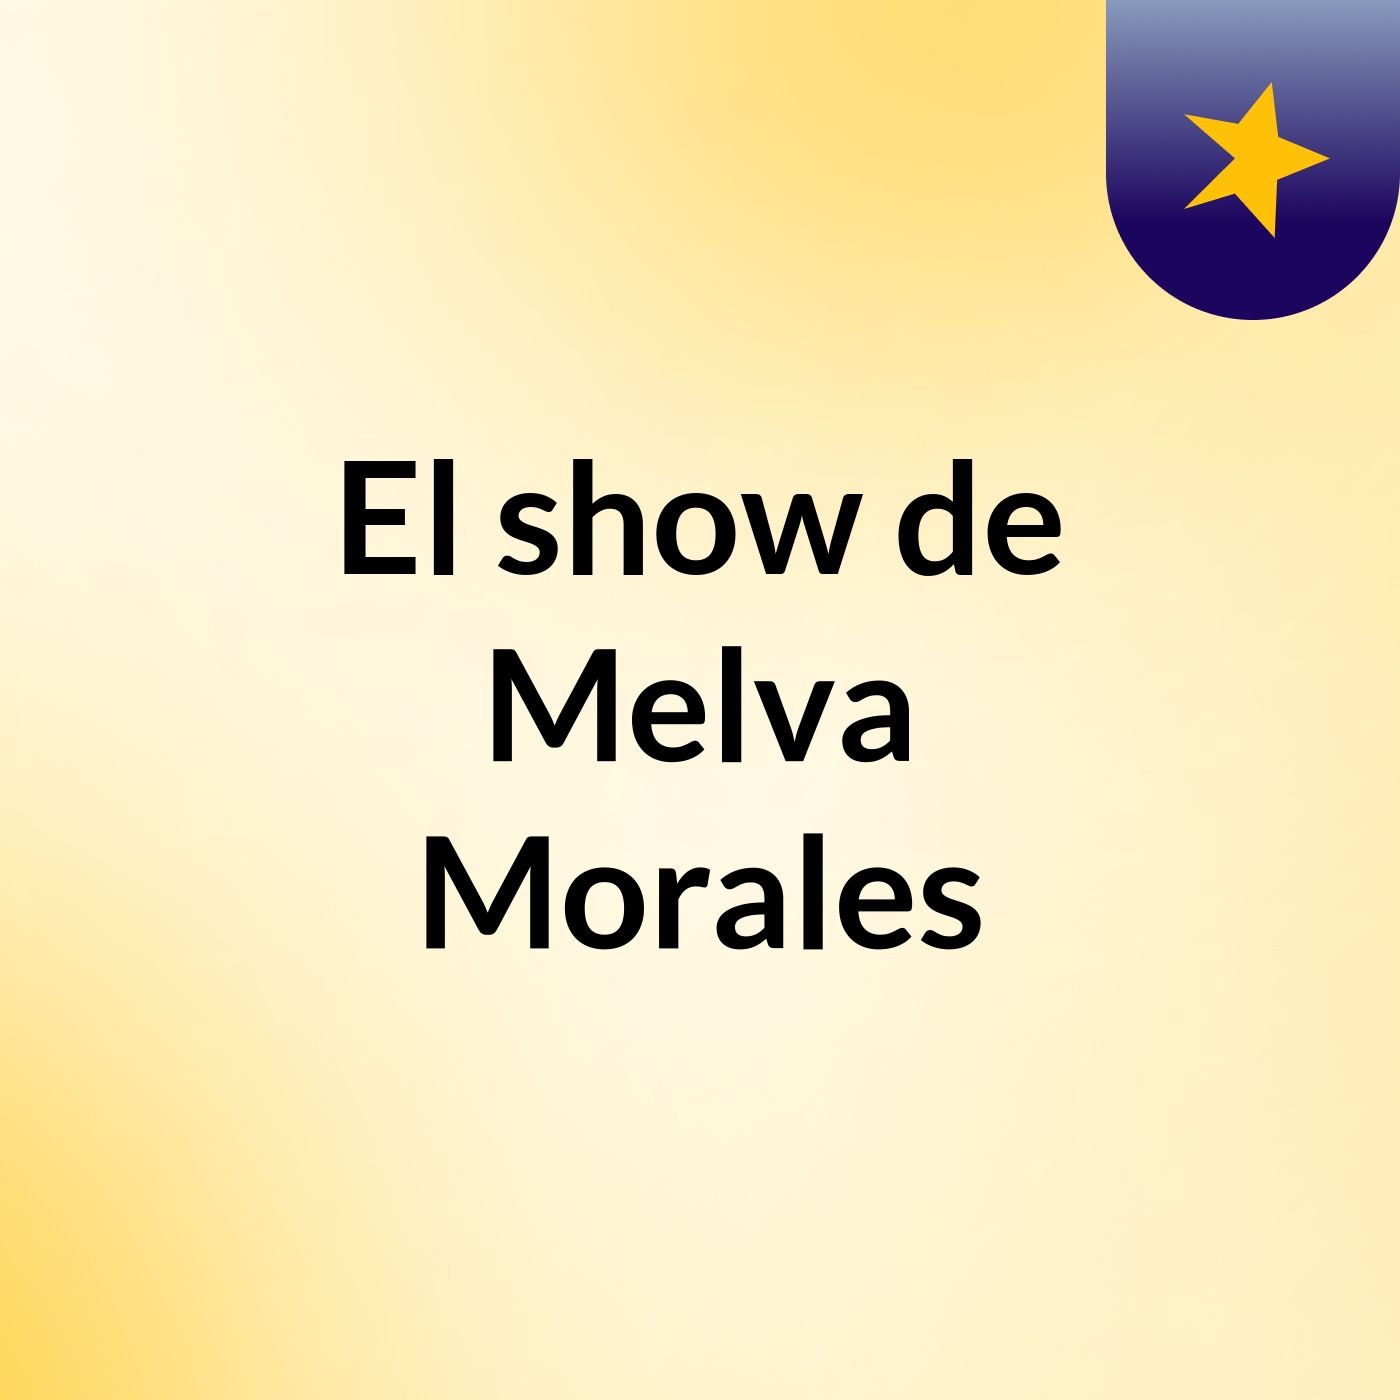 El show de Melva Morales